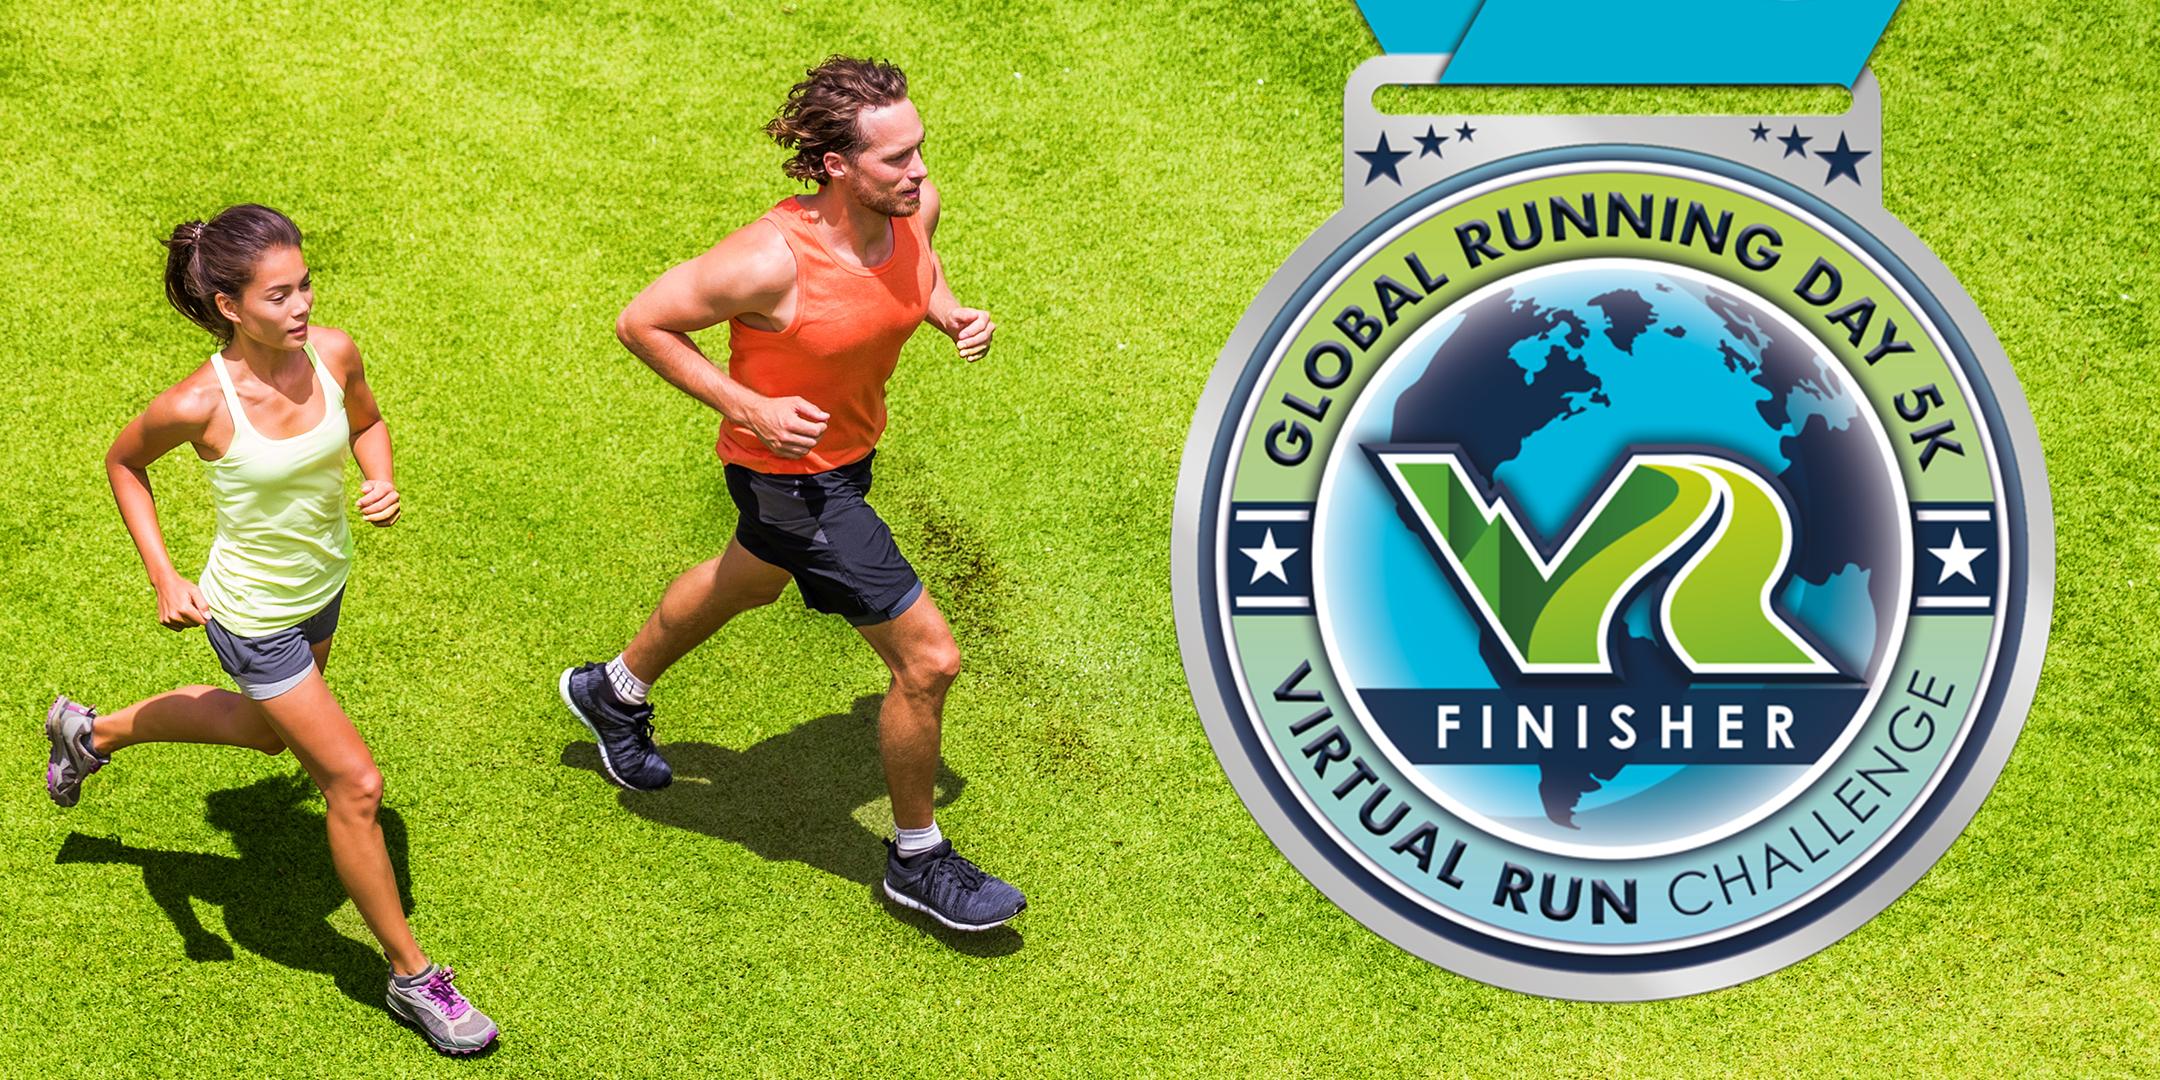 2020 Global Running Day Free Virtual 5k - Atlanta